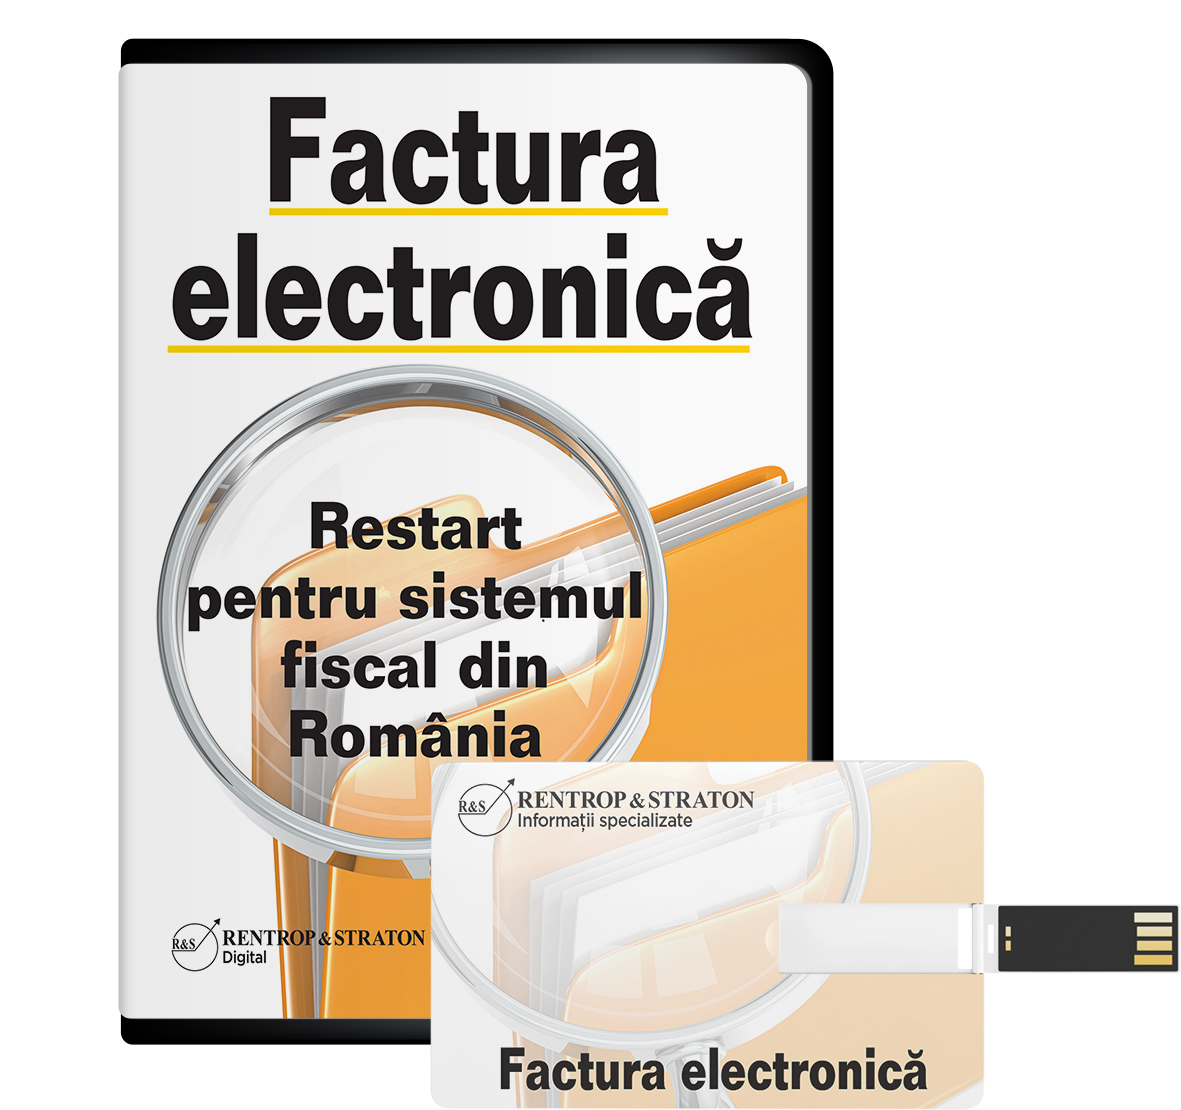 Factura electronica - Restart pentru sistemul fiscal din Romania